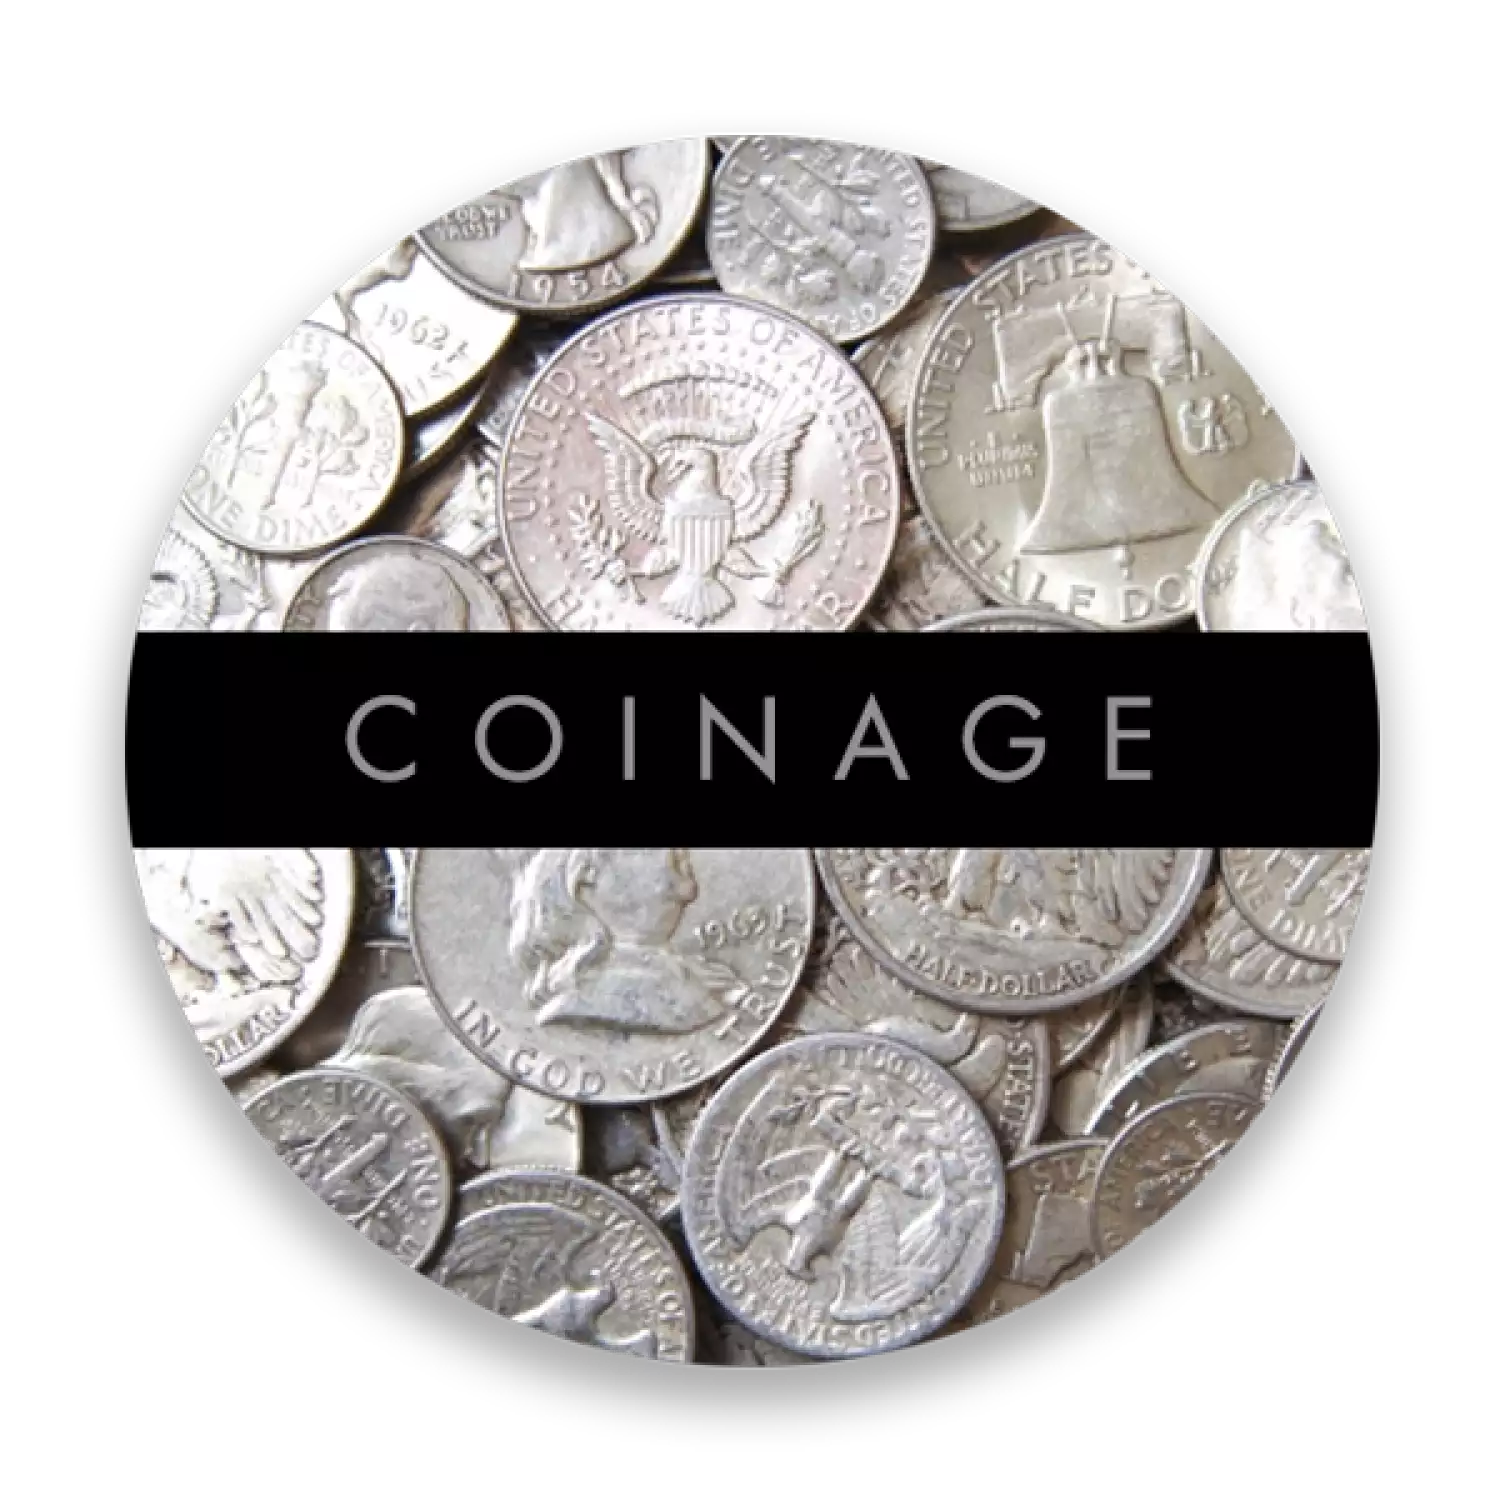 US 90% Silver Coinage - Pre 1965 - Junk Silver